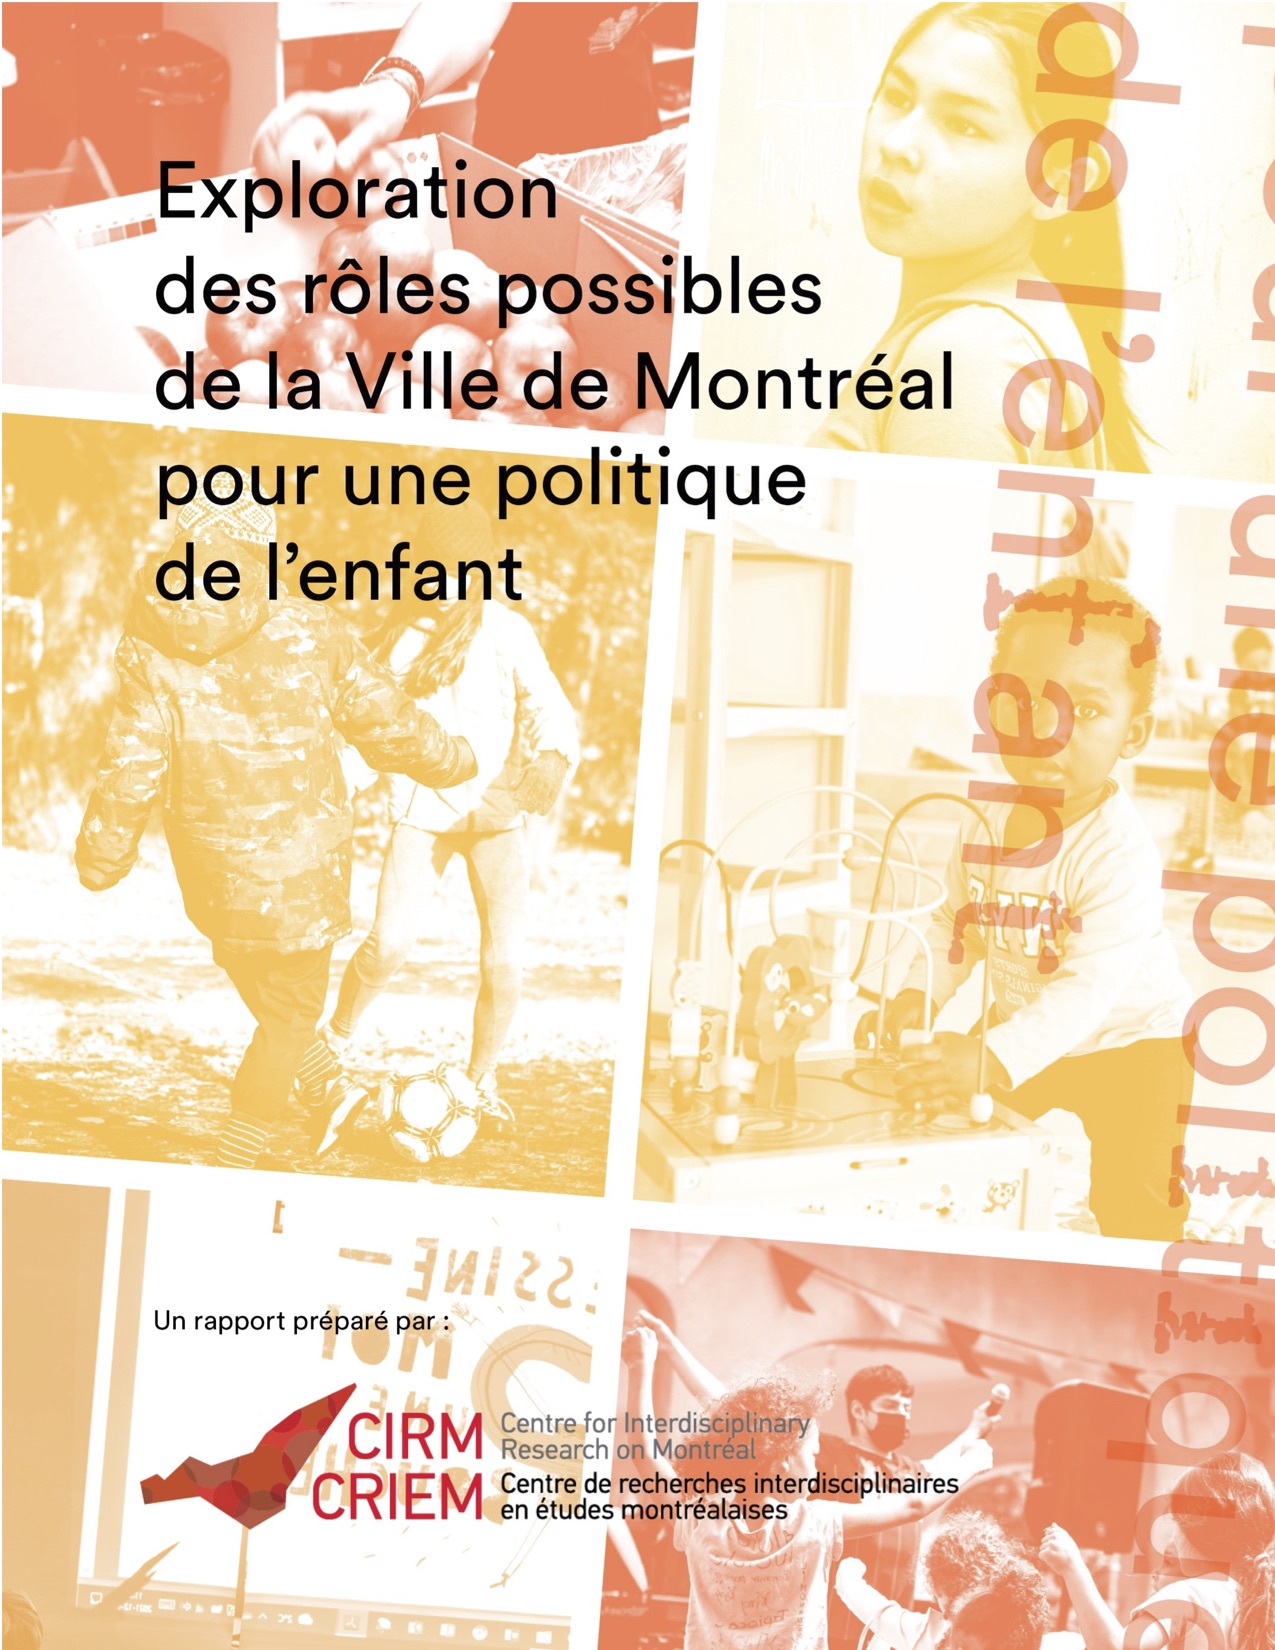 Explorations des rôles possibles de la Ville de Montréal pour une politique de l’enfant